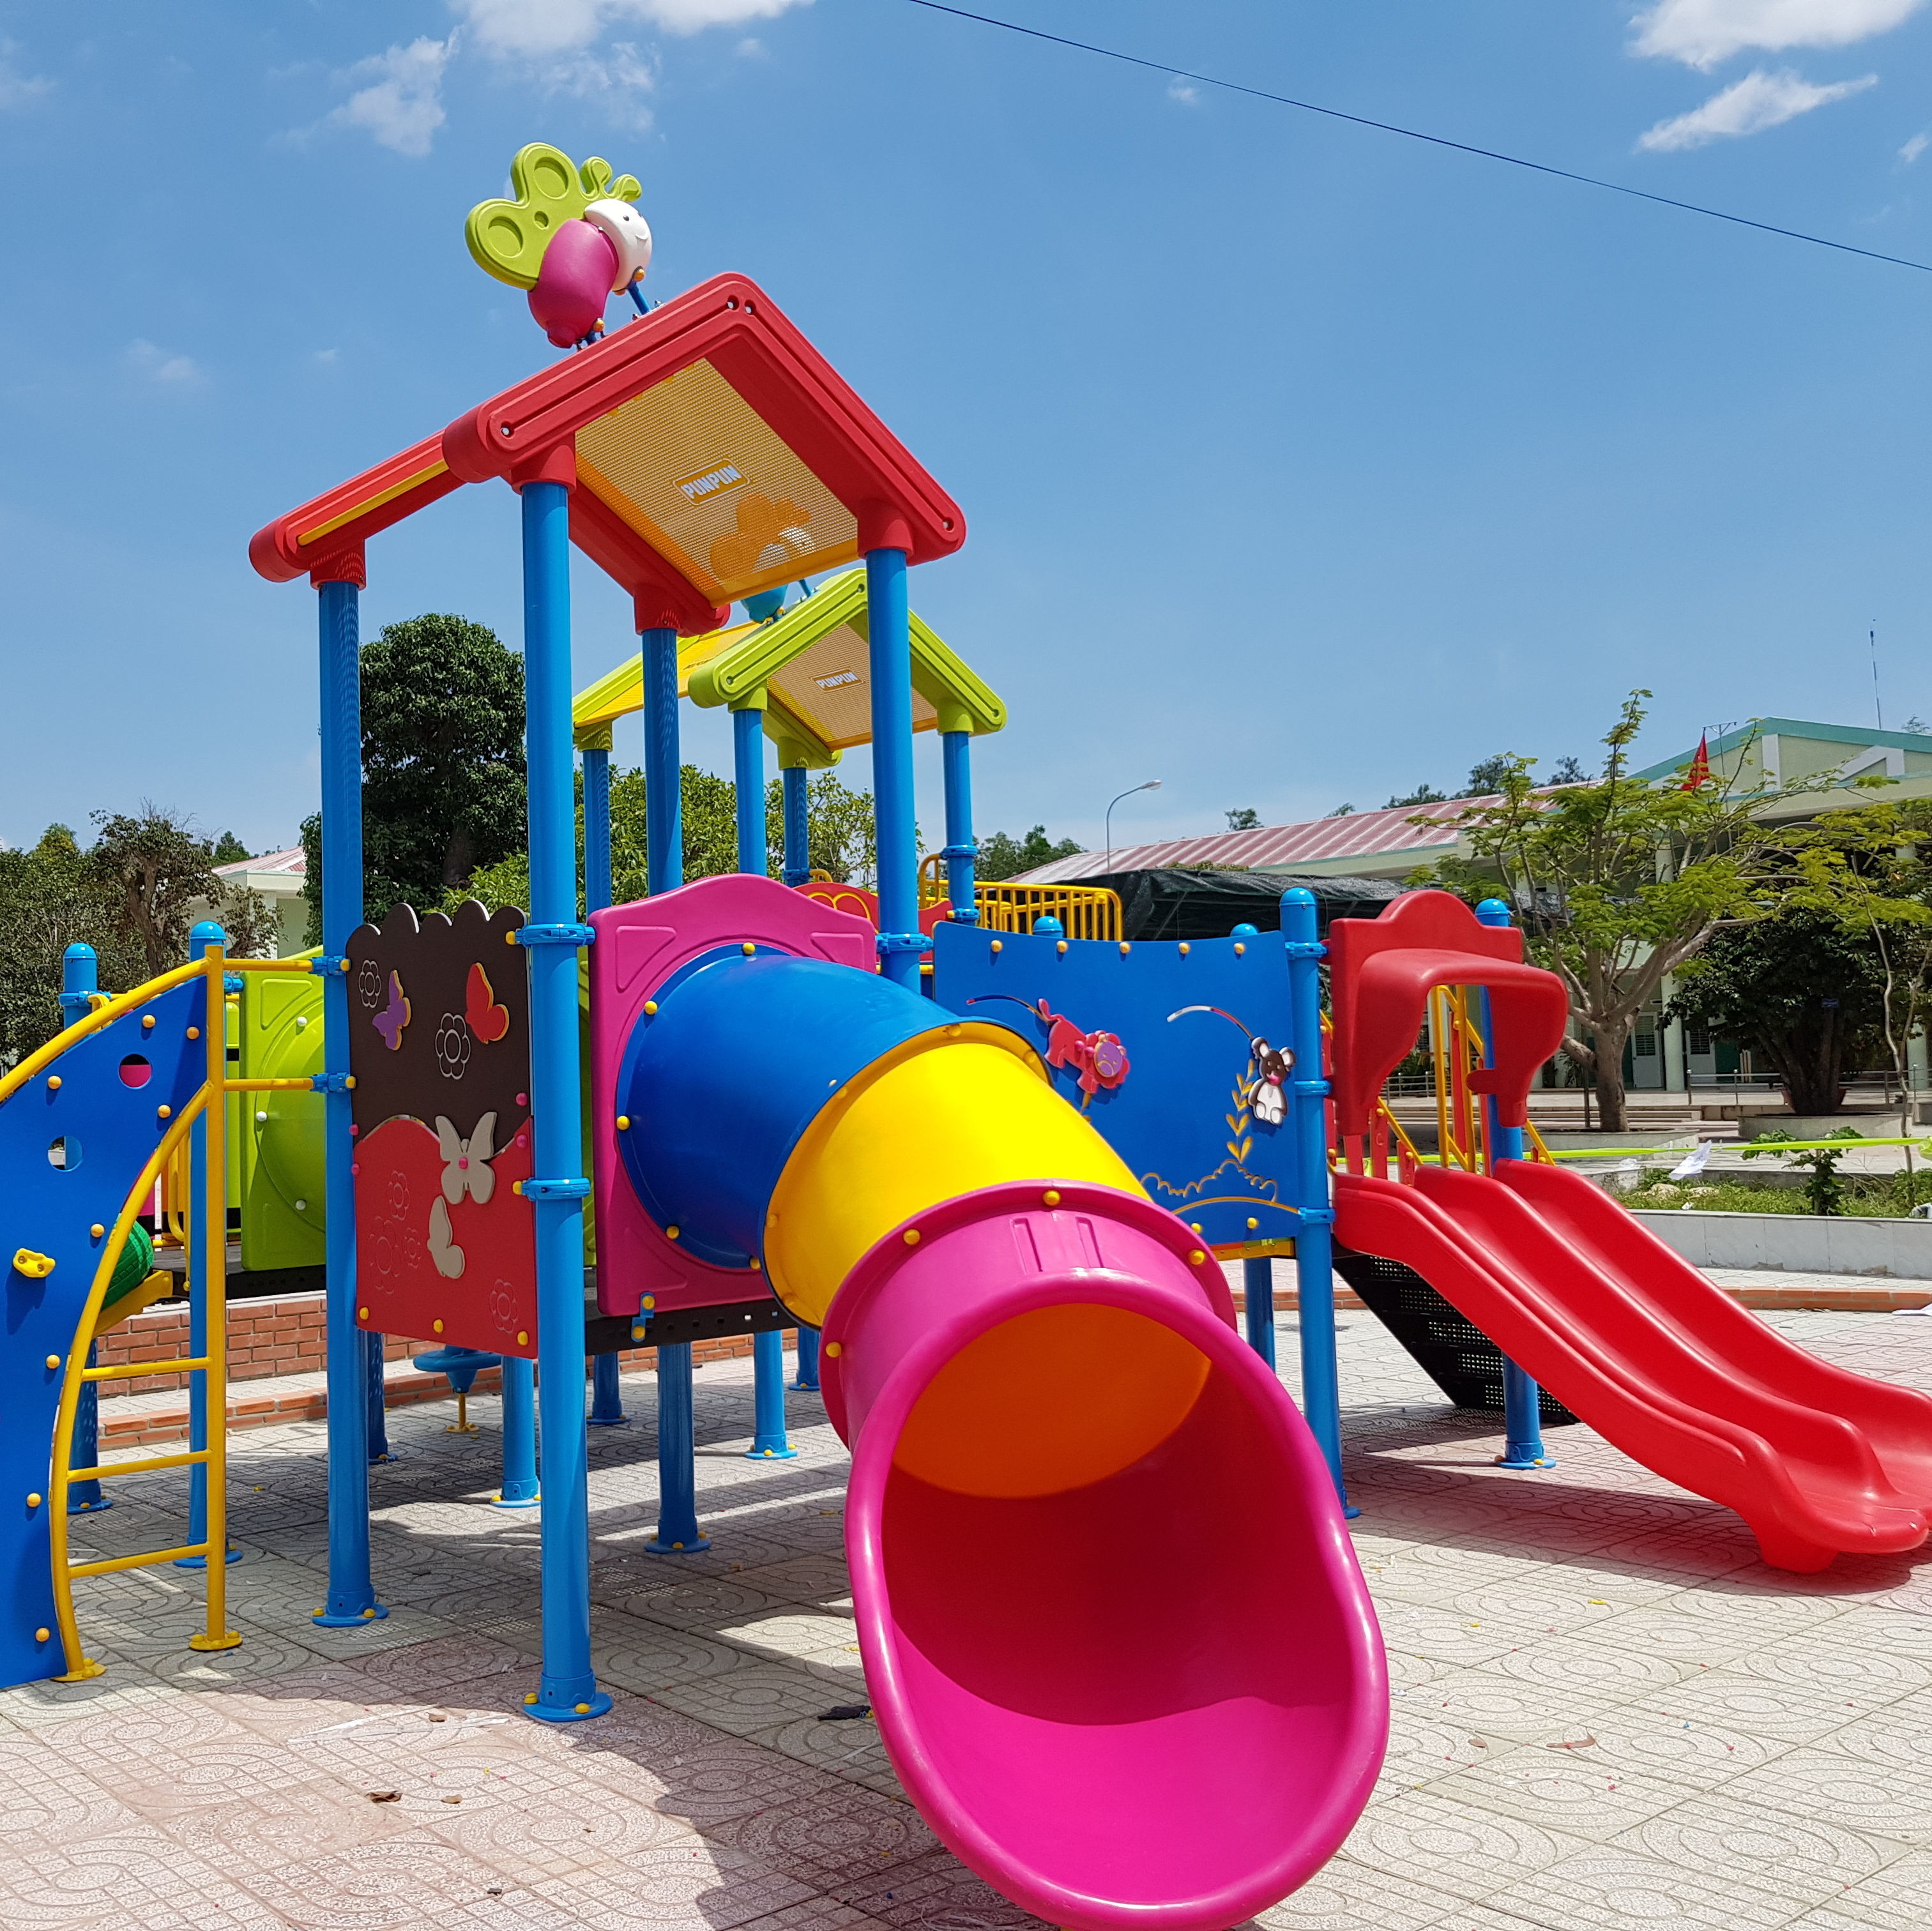 outdoor playground สนามเด็กเล่นปันปัน เครื่องเล่นสนามปลอดภัย คุณภาพมาตรฐาน